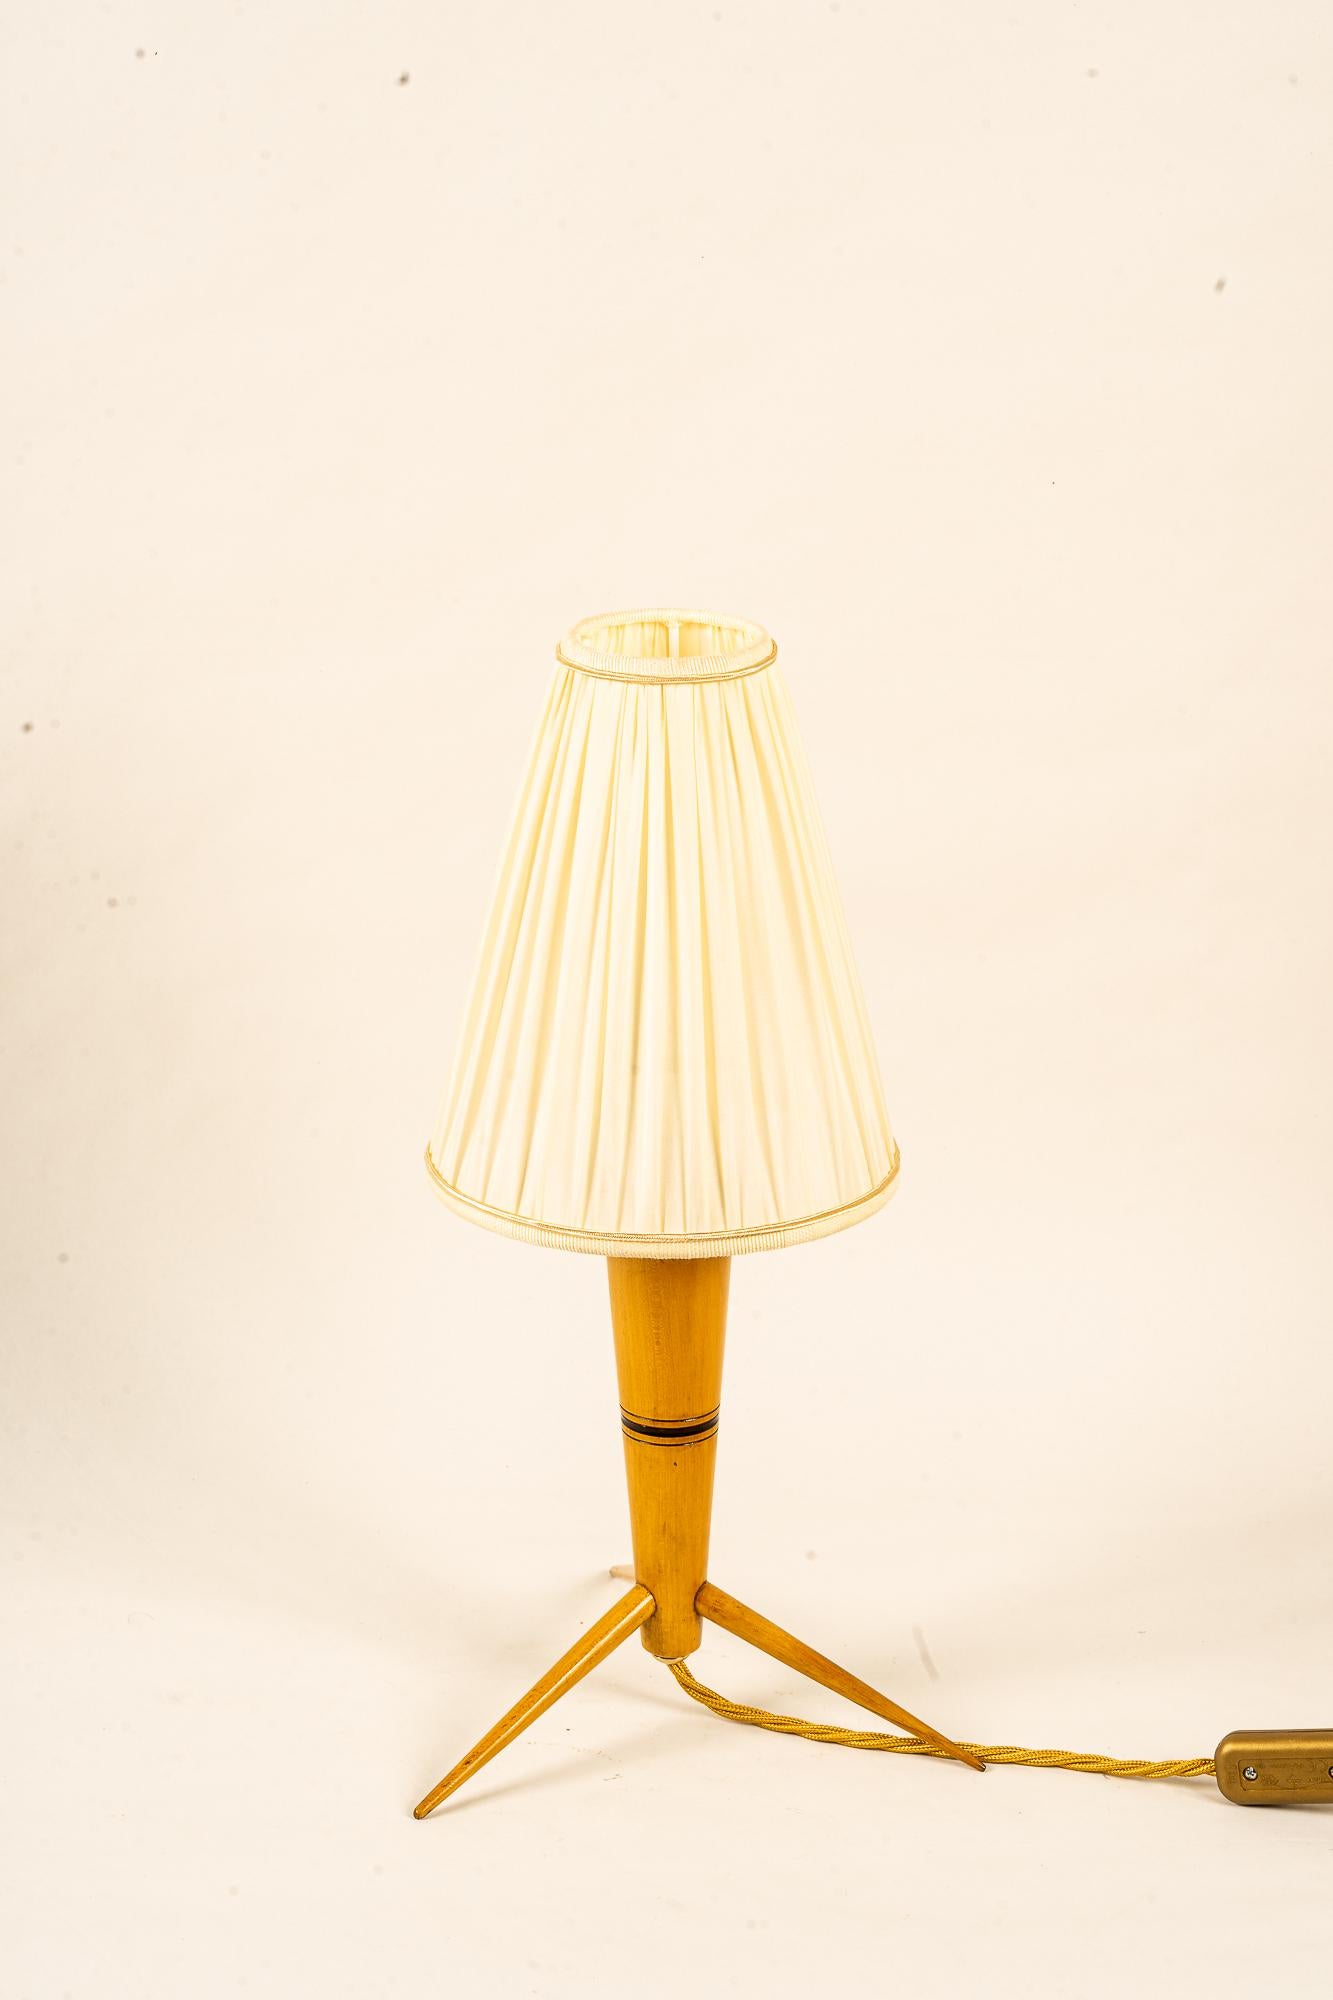 Tischlampe aus Holz mit Stoffschirm um 1950
Ursprünglicher Zustand
Dieser Farbton wird ersetzt (neu)